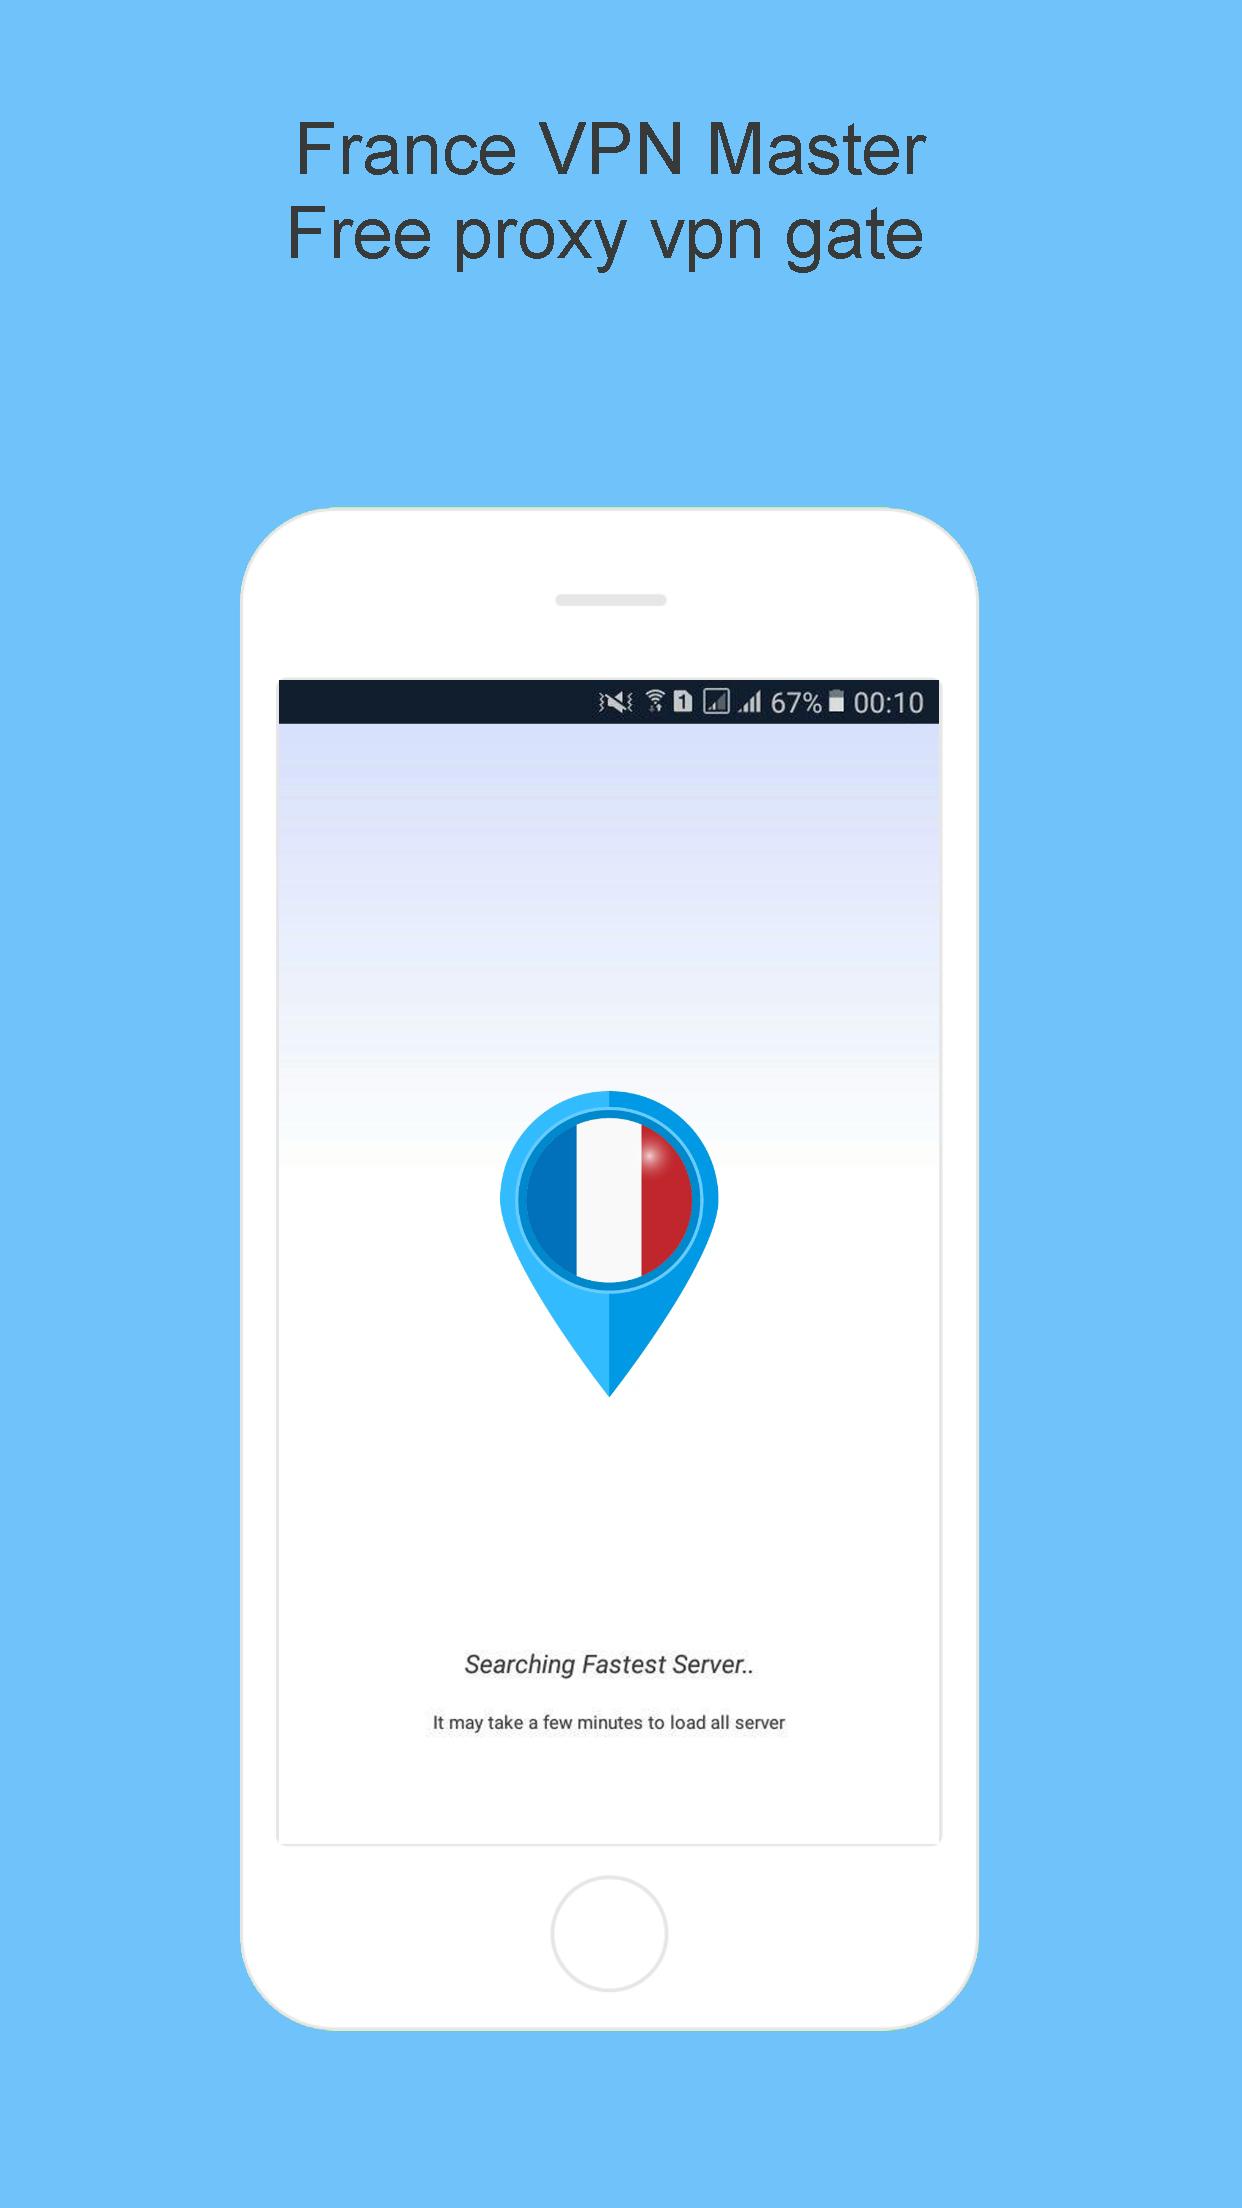 France VPN Master for Android - APK Download